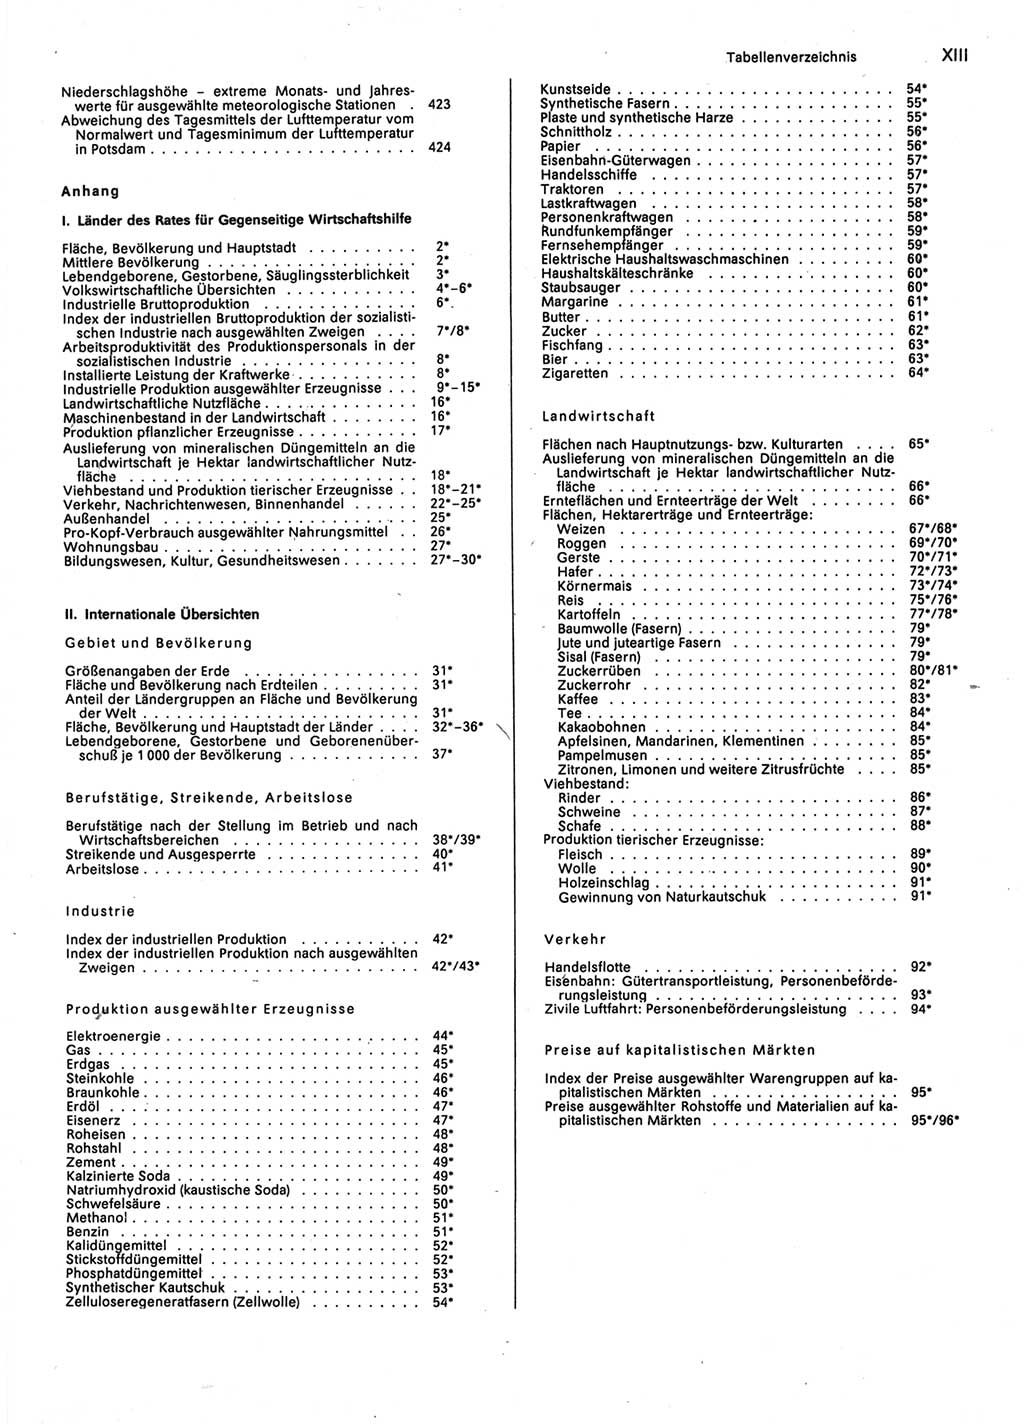 Statistisches Jahrbuch der Deutschen Demokratischen Republik (DDR) 1987, Seite 13 (Stat. Jb. DDR 1987, S. 13)